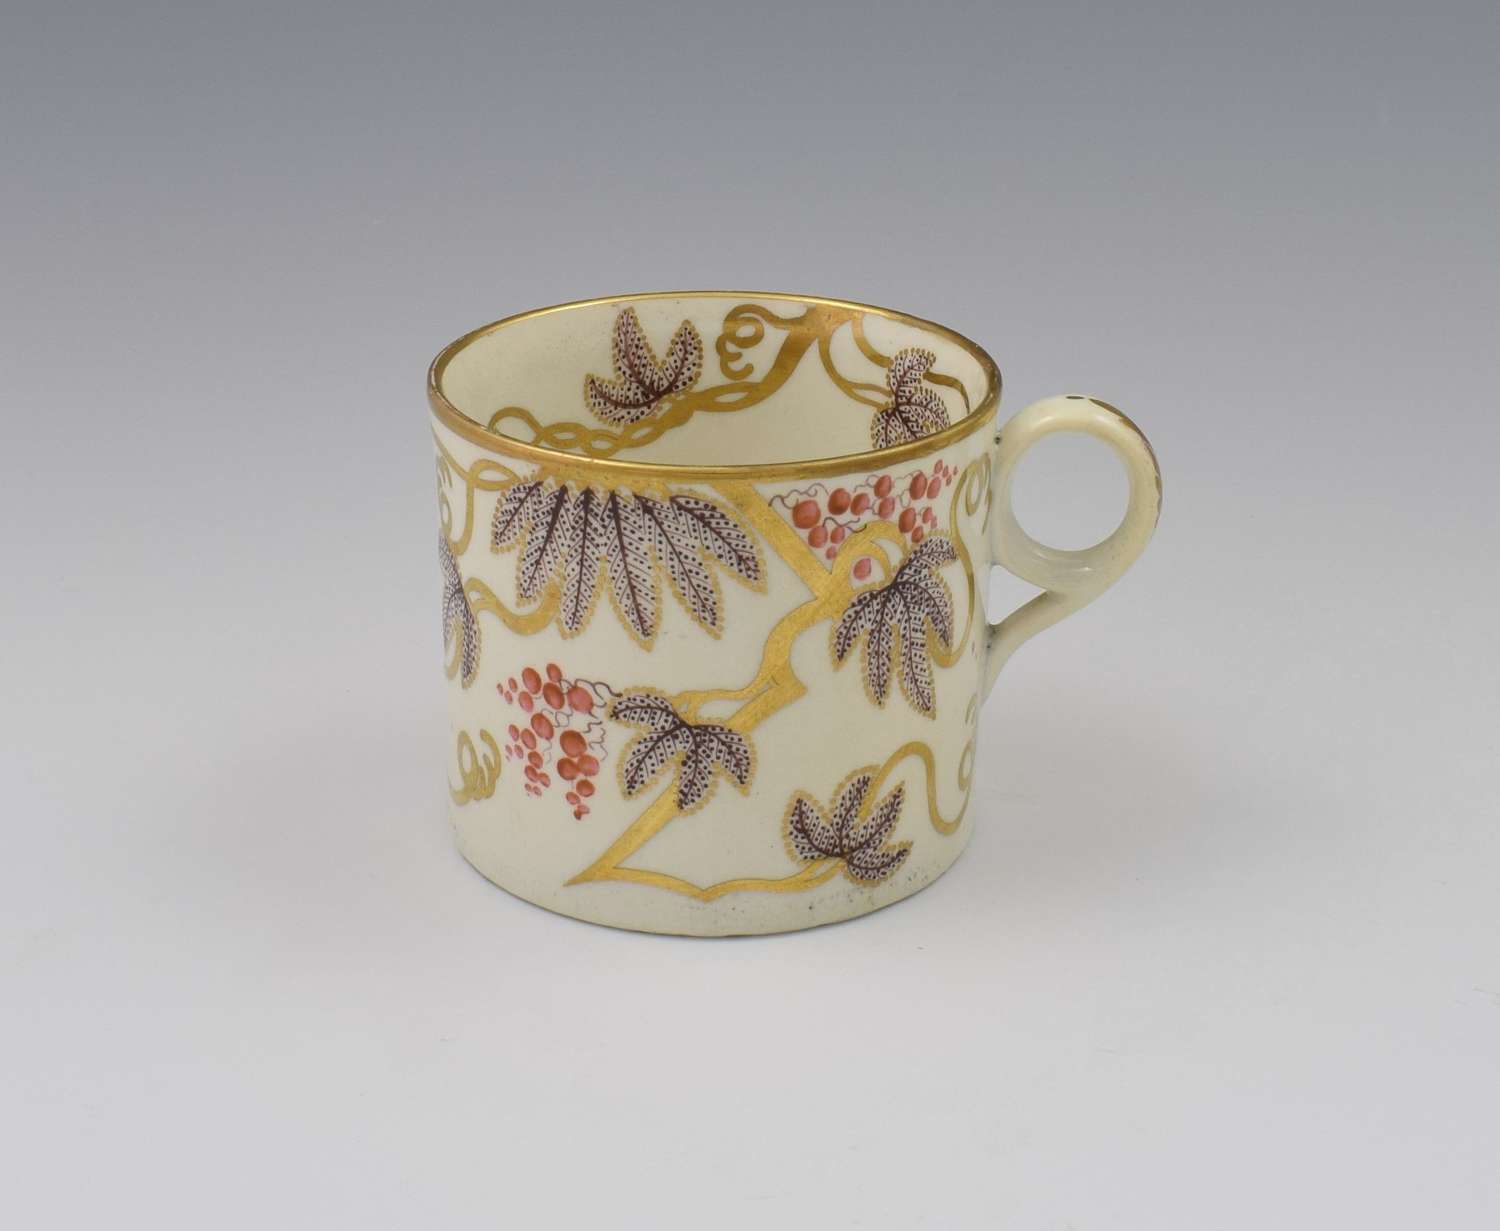 Regency Minton Porcelain Coffee Can Pattern 85 c.1805